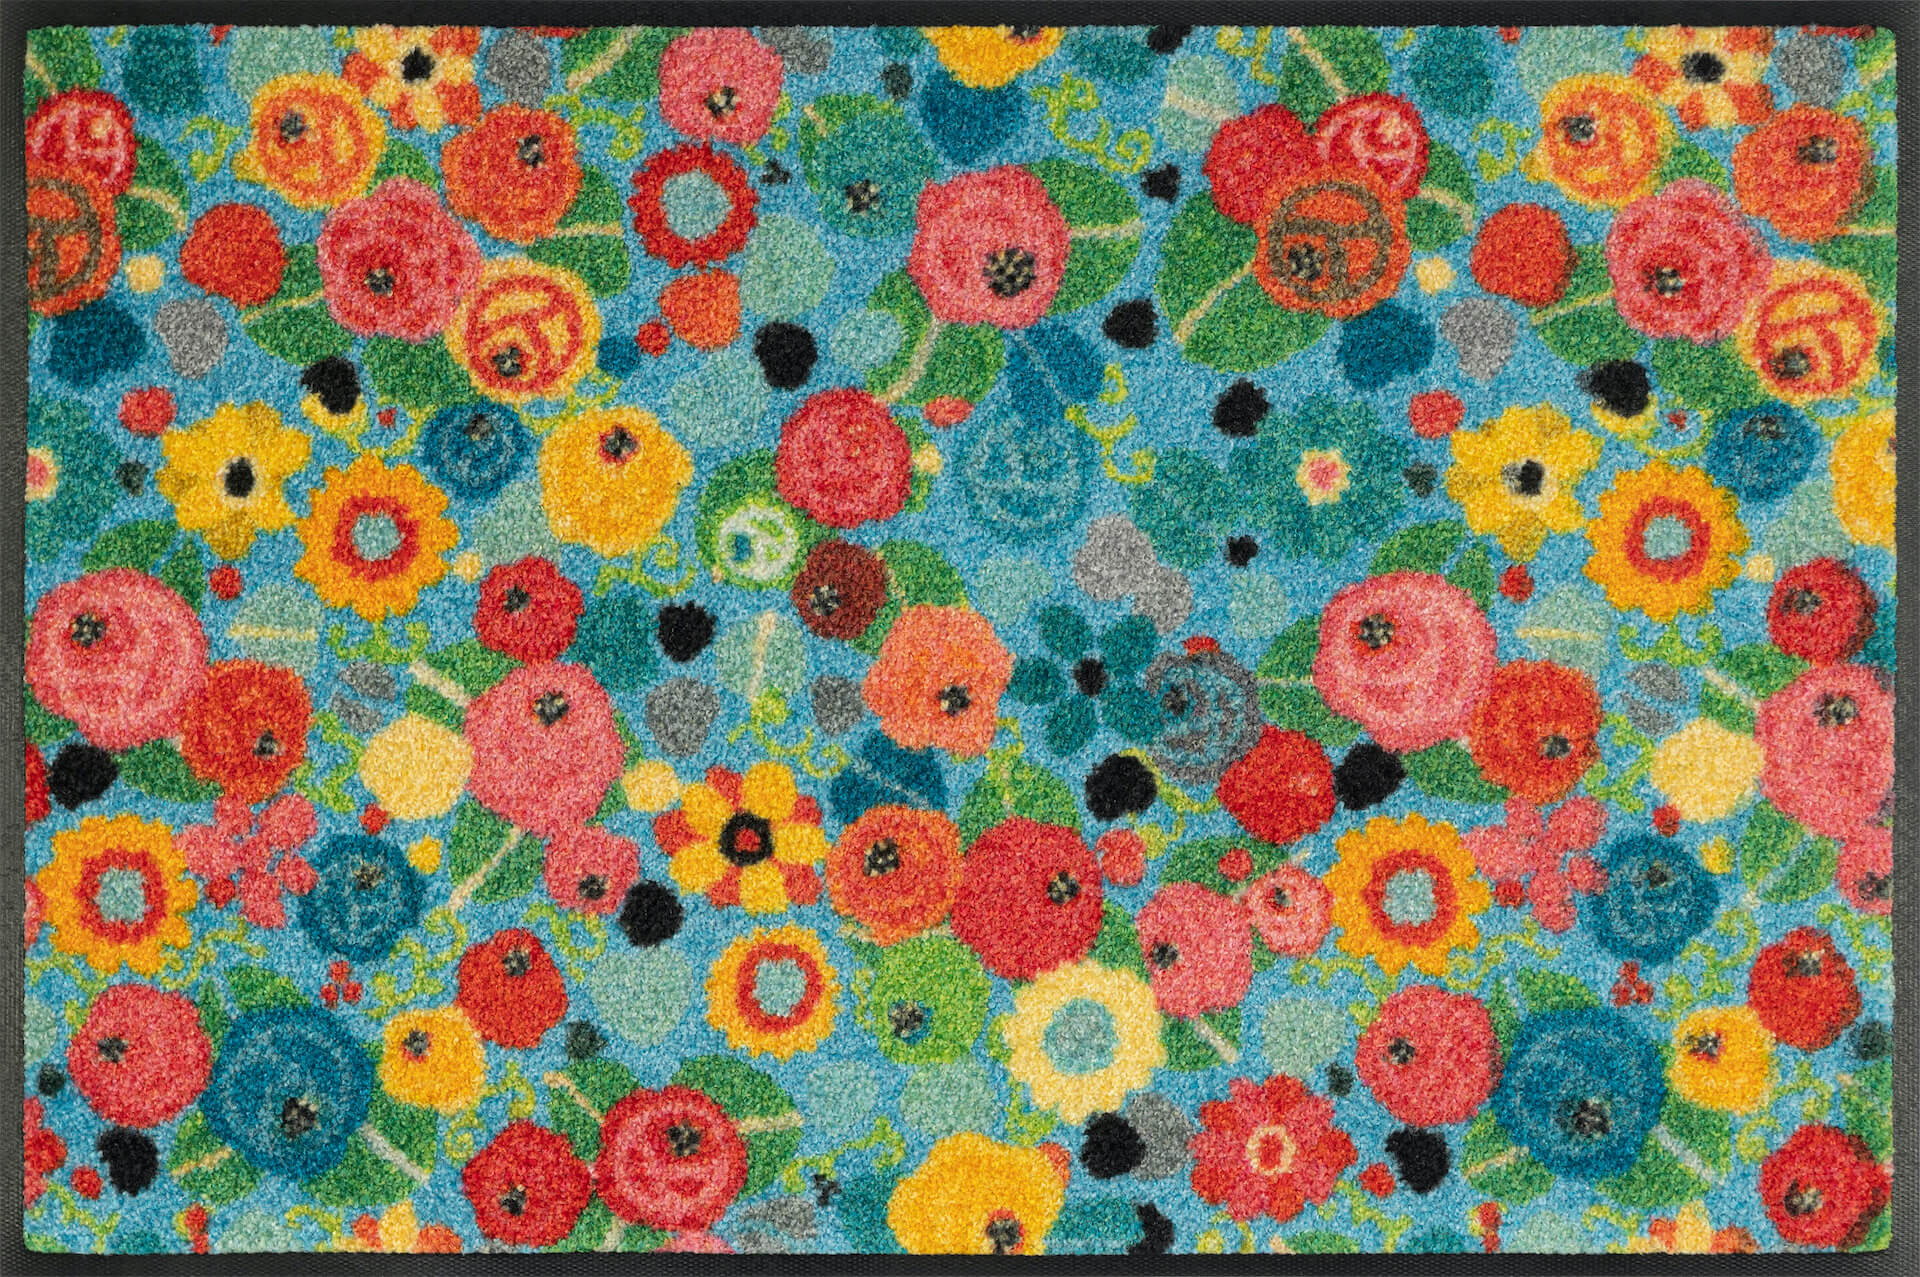 Fußmatte Flower Power, Wash & Dry Design, 050 x 075 cm, Draufsicht